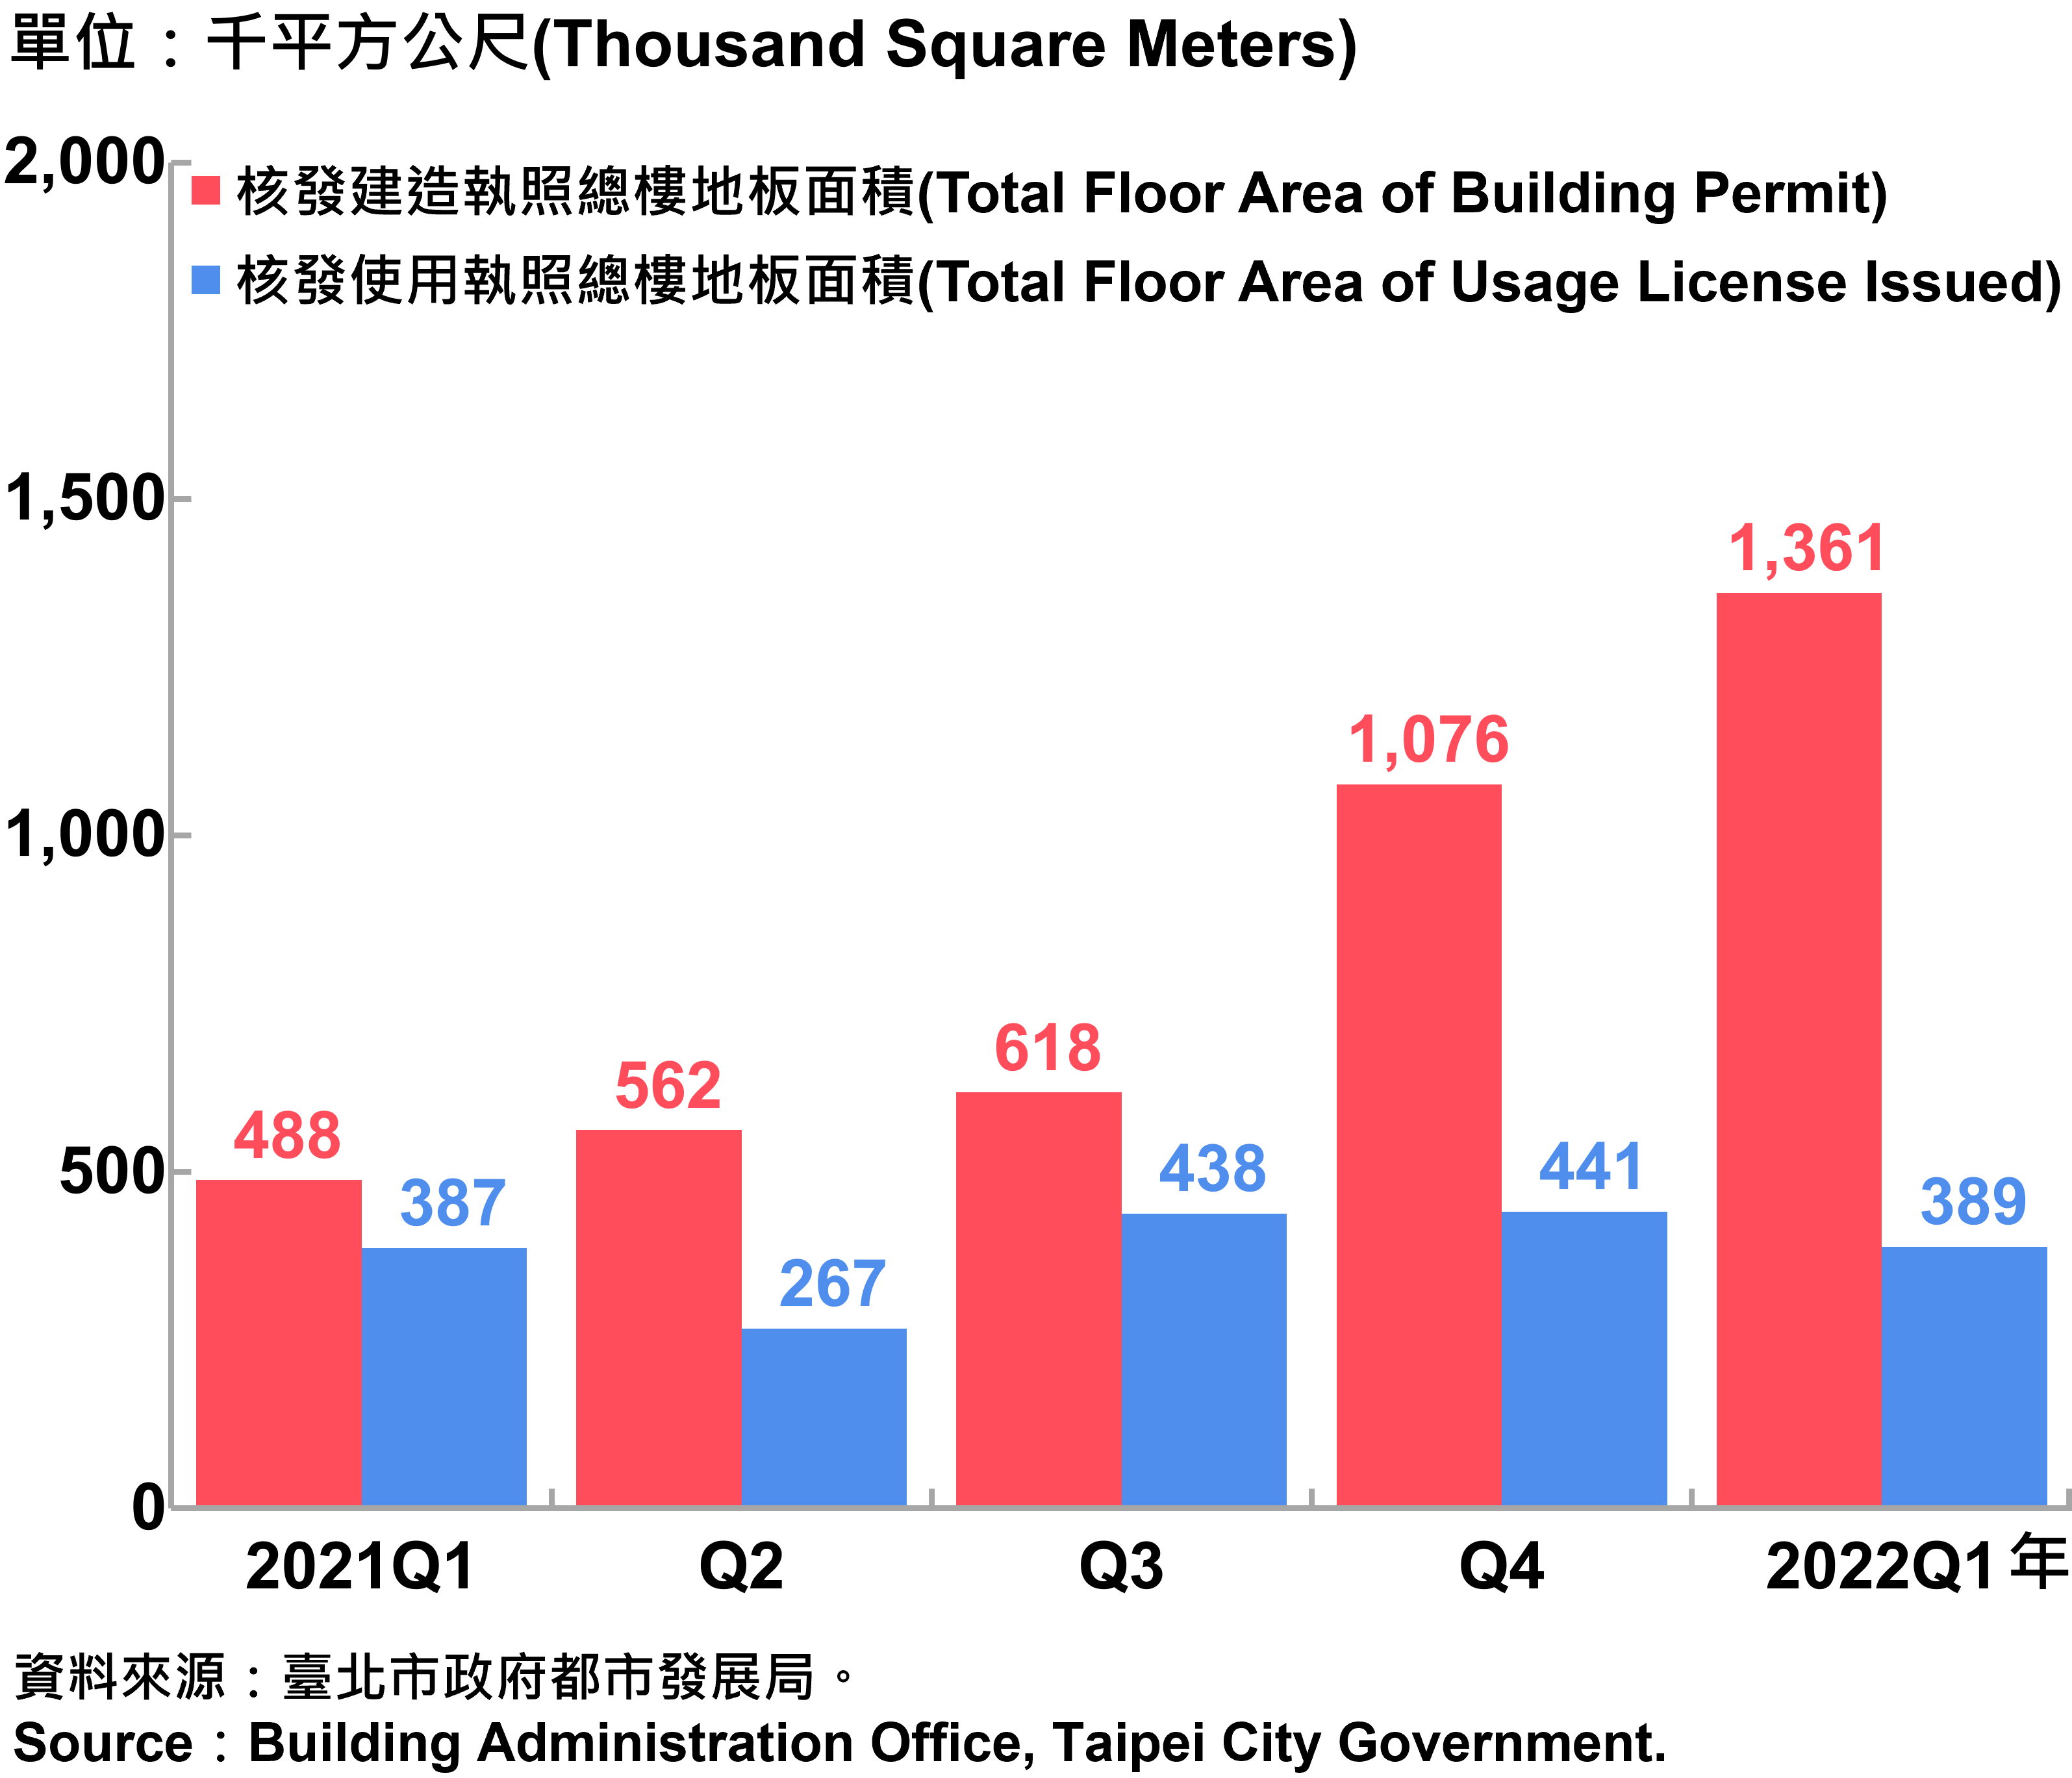 臺北市核發建築物執照與使用執照總樓地板面積—2022Q1 Total Floor Area of Building Permit and Usage License Issued in Taipei City—2022Q1